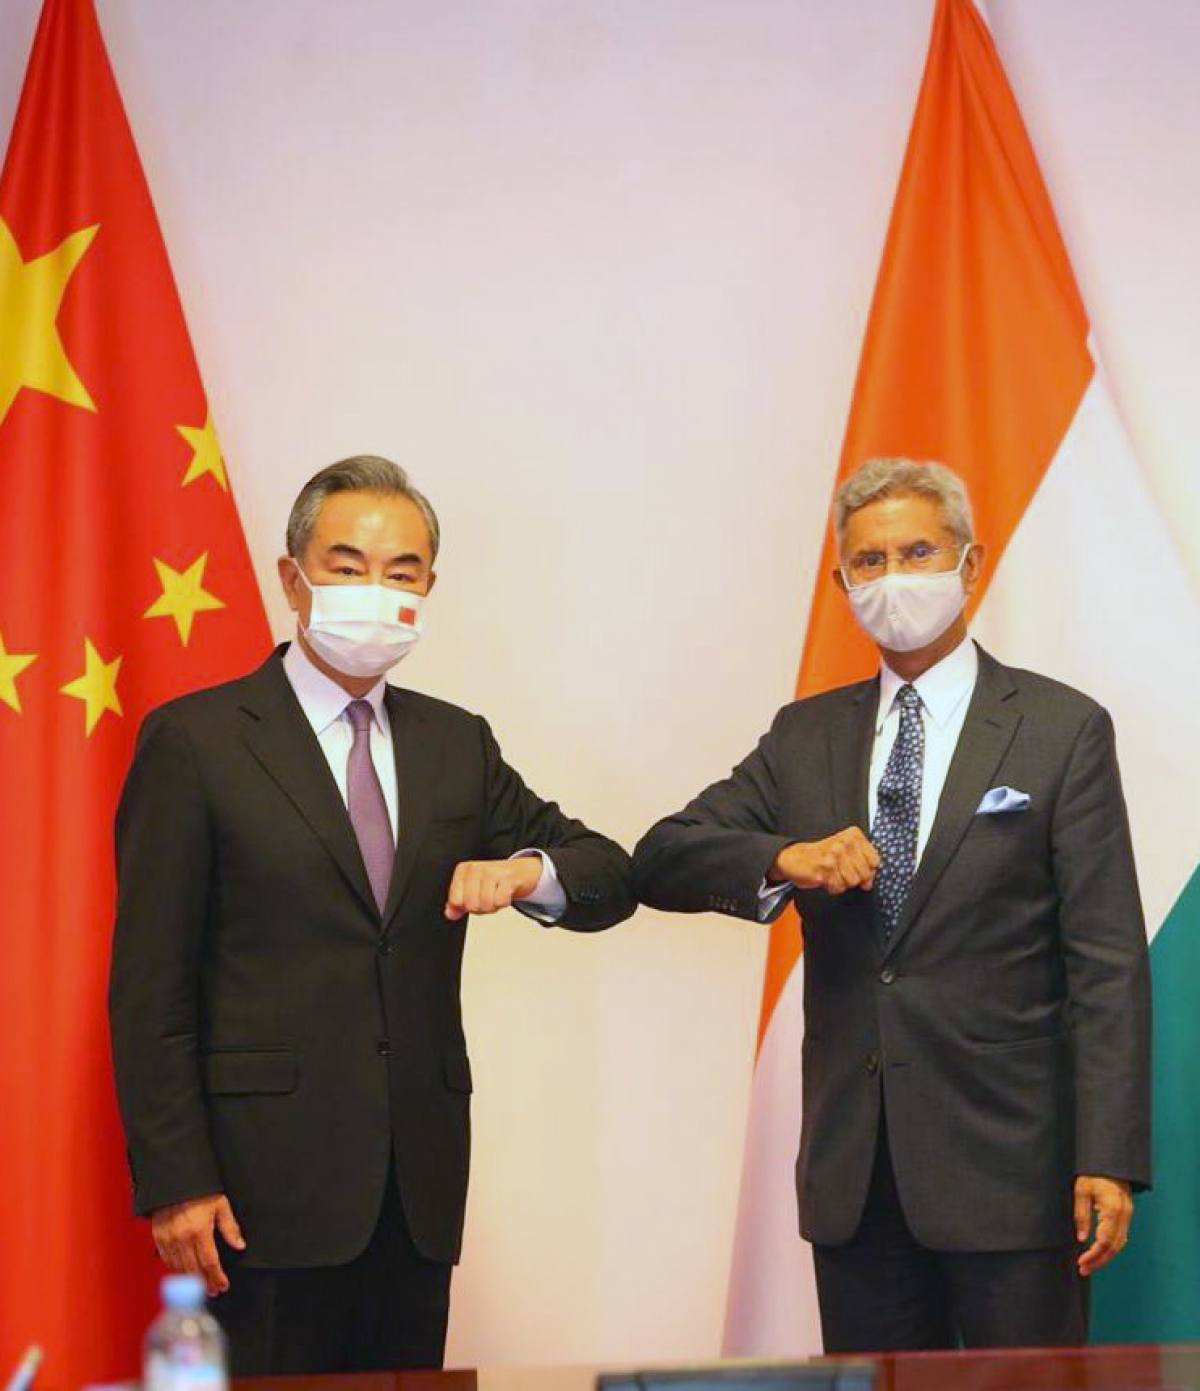 Ngoại trưởng Ấn Độ - Trung Quốc gặp mặt để bàn chuyện biên giới